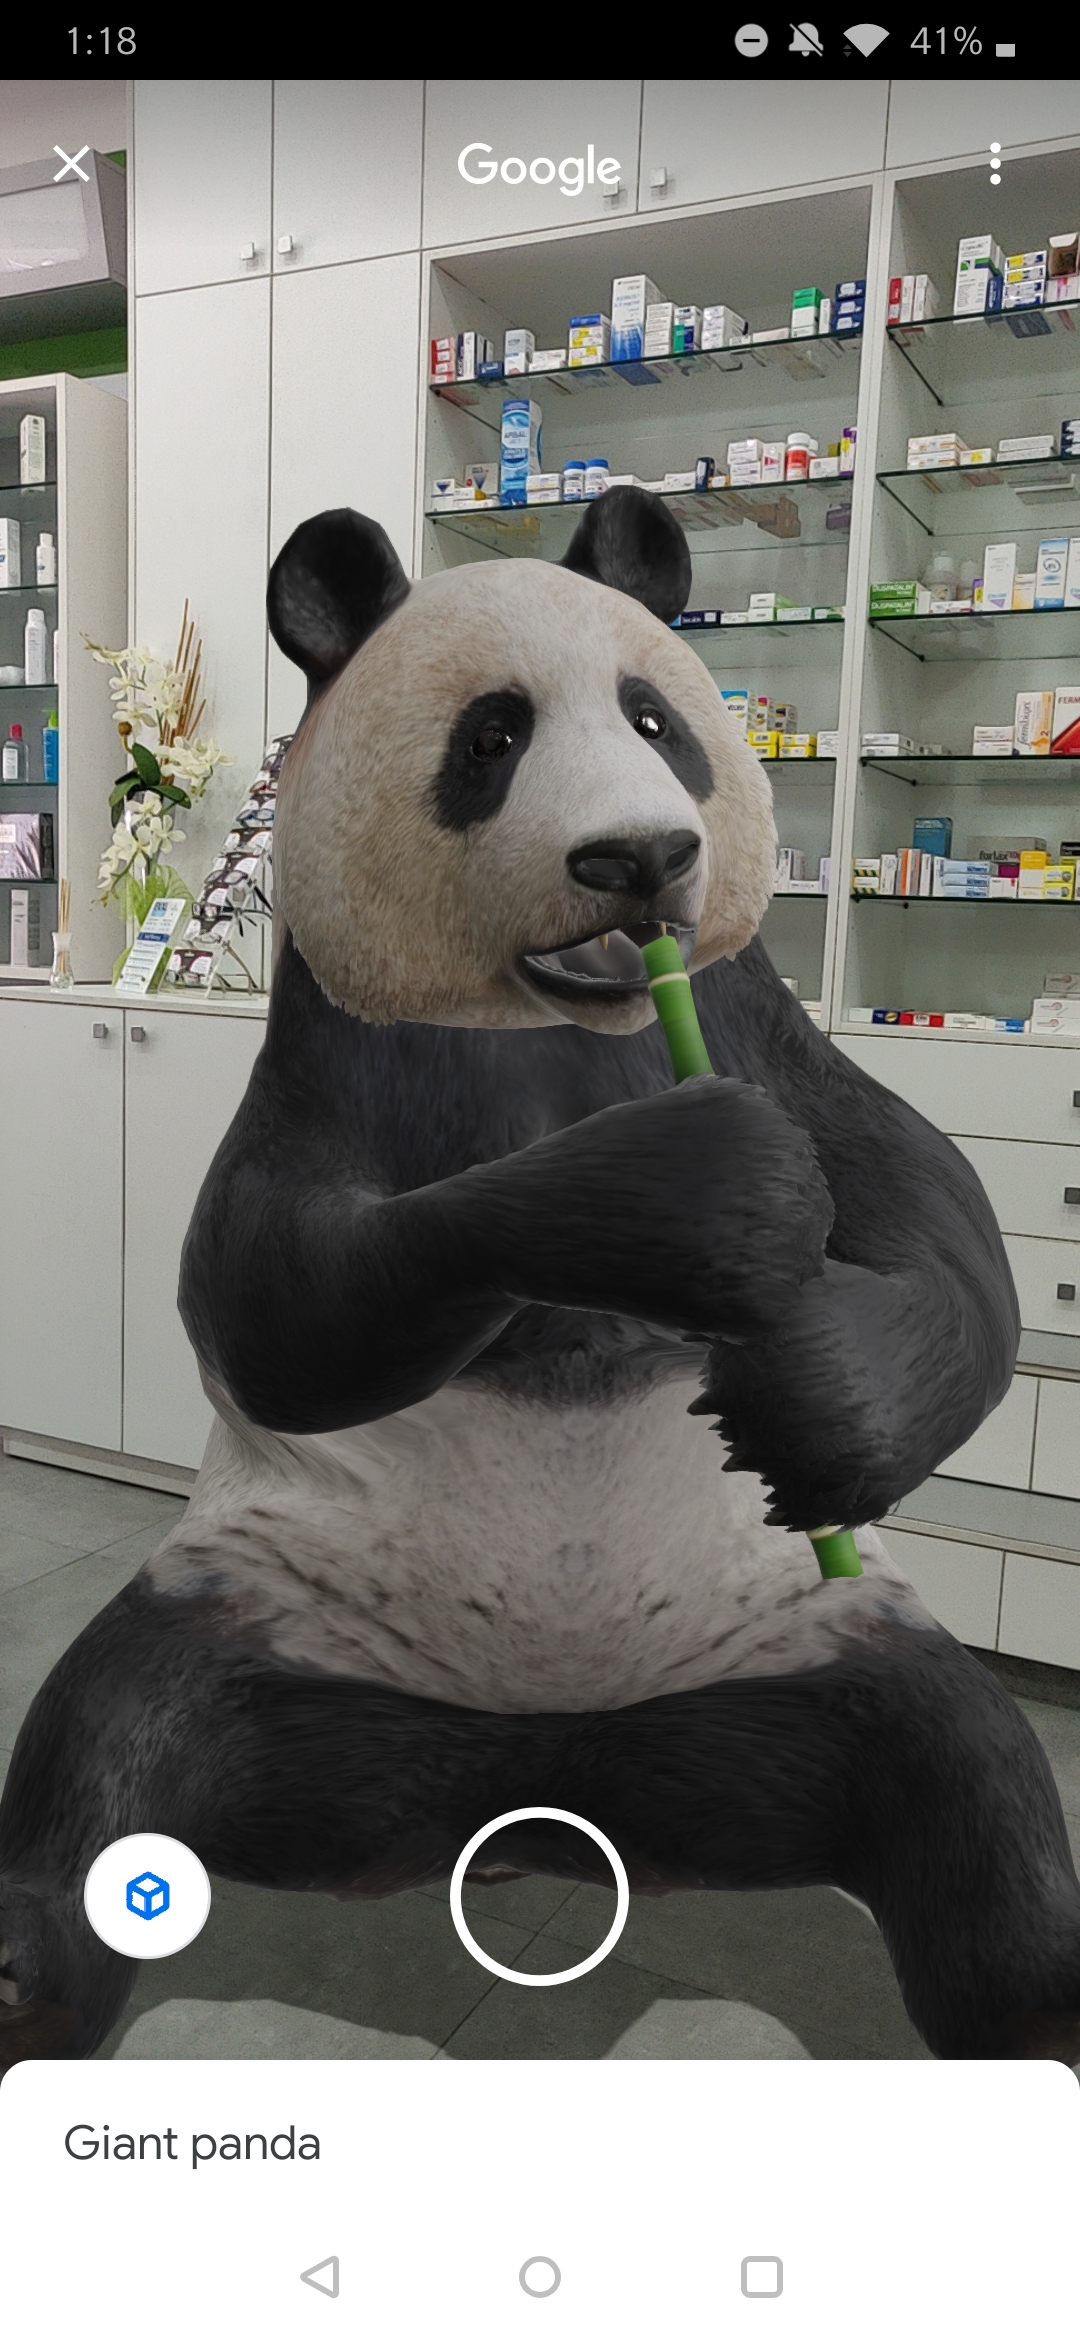 Mettete uno squalo, un serpente o un panda nel salotto con i nuovi modelli  3D della Ricerca Google